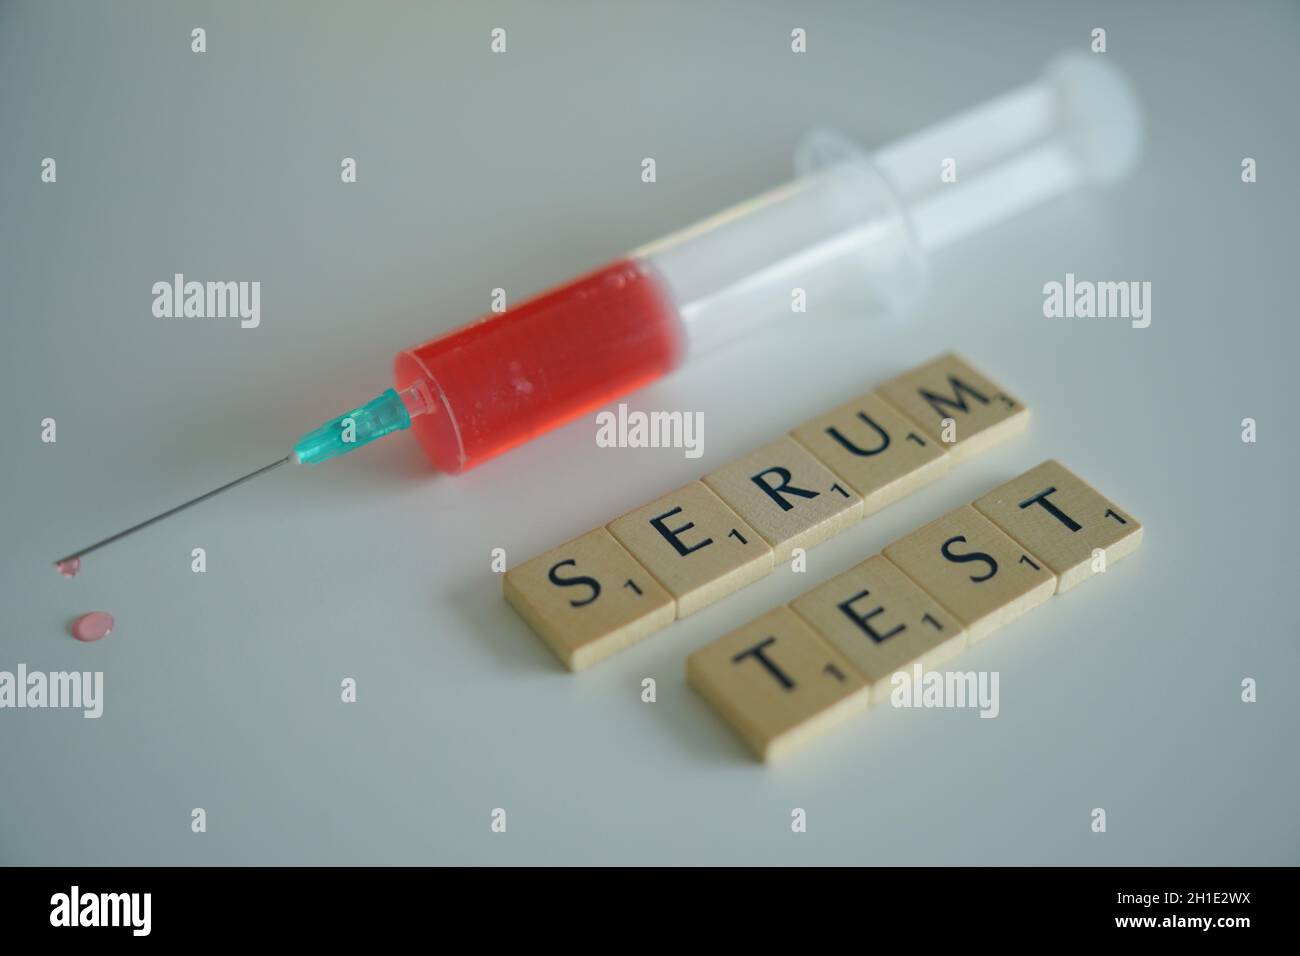 Symbolfoto, Symbolbild Symbolbild einer Spritze mit Blut für einen Serumtest zur Abwehr von Coronaviren und Krisen Stockfoto